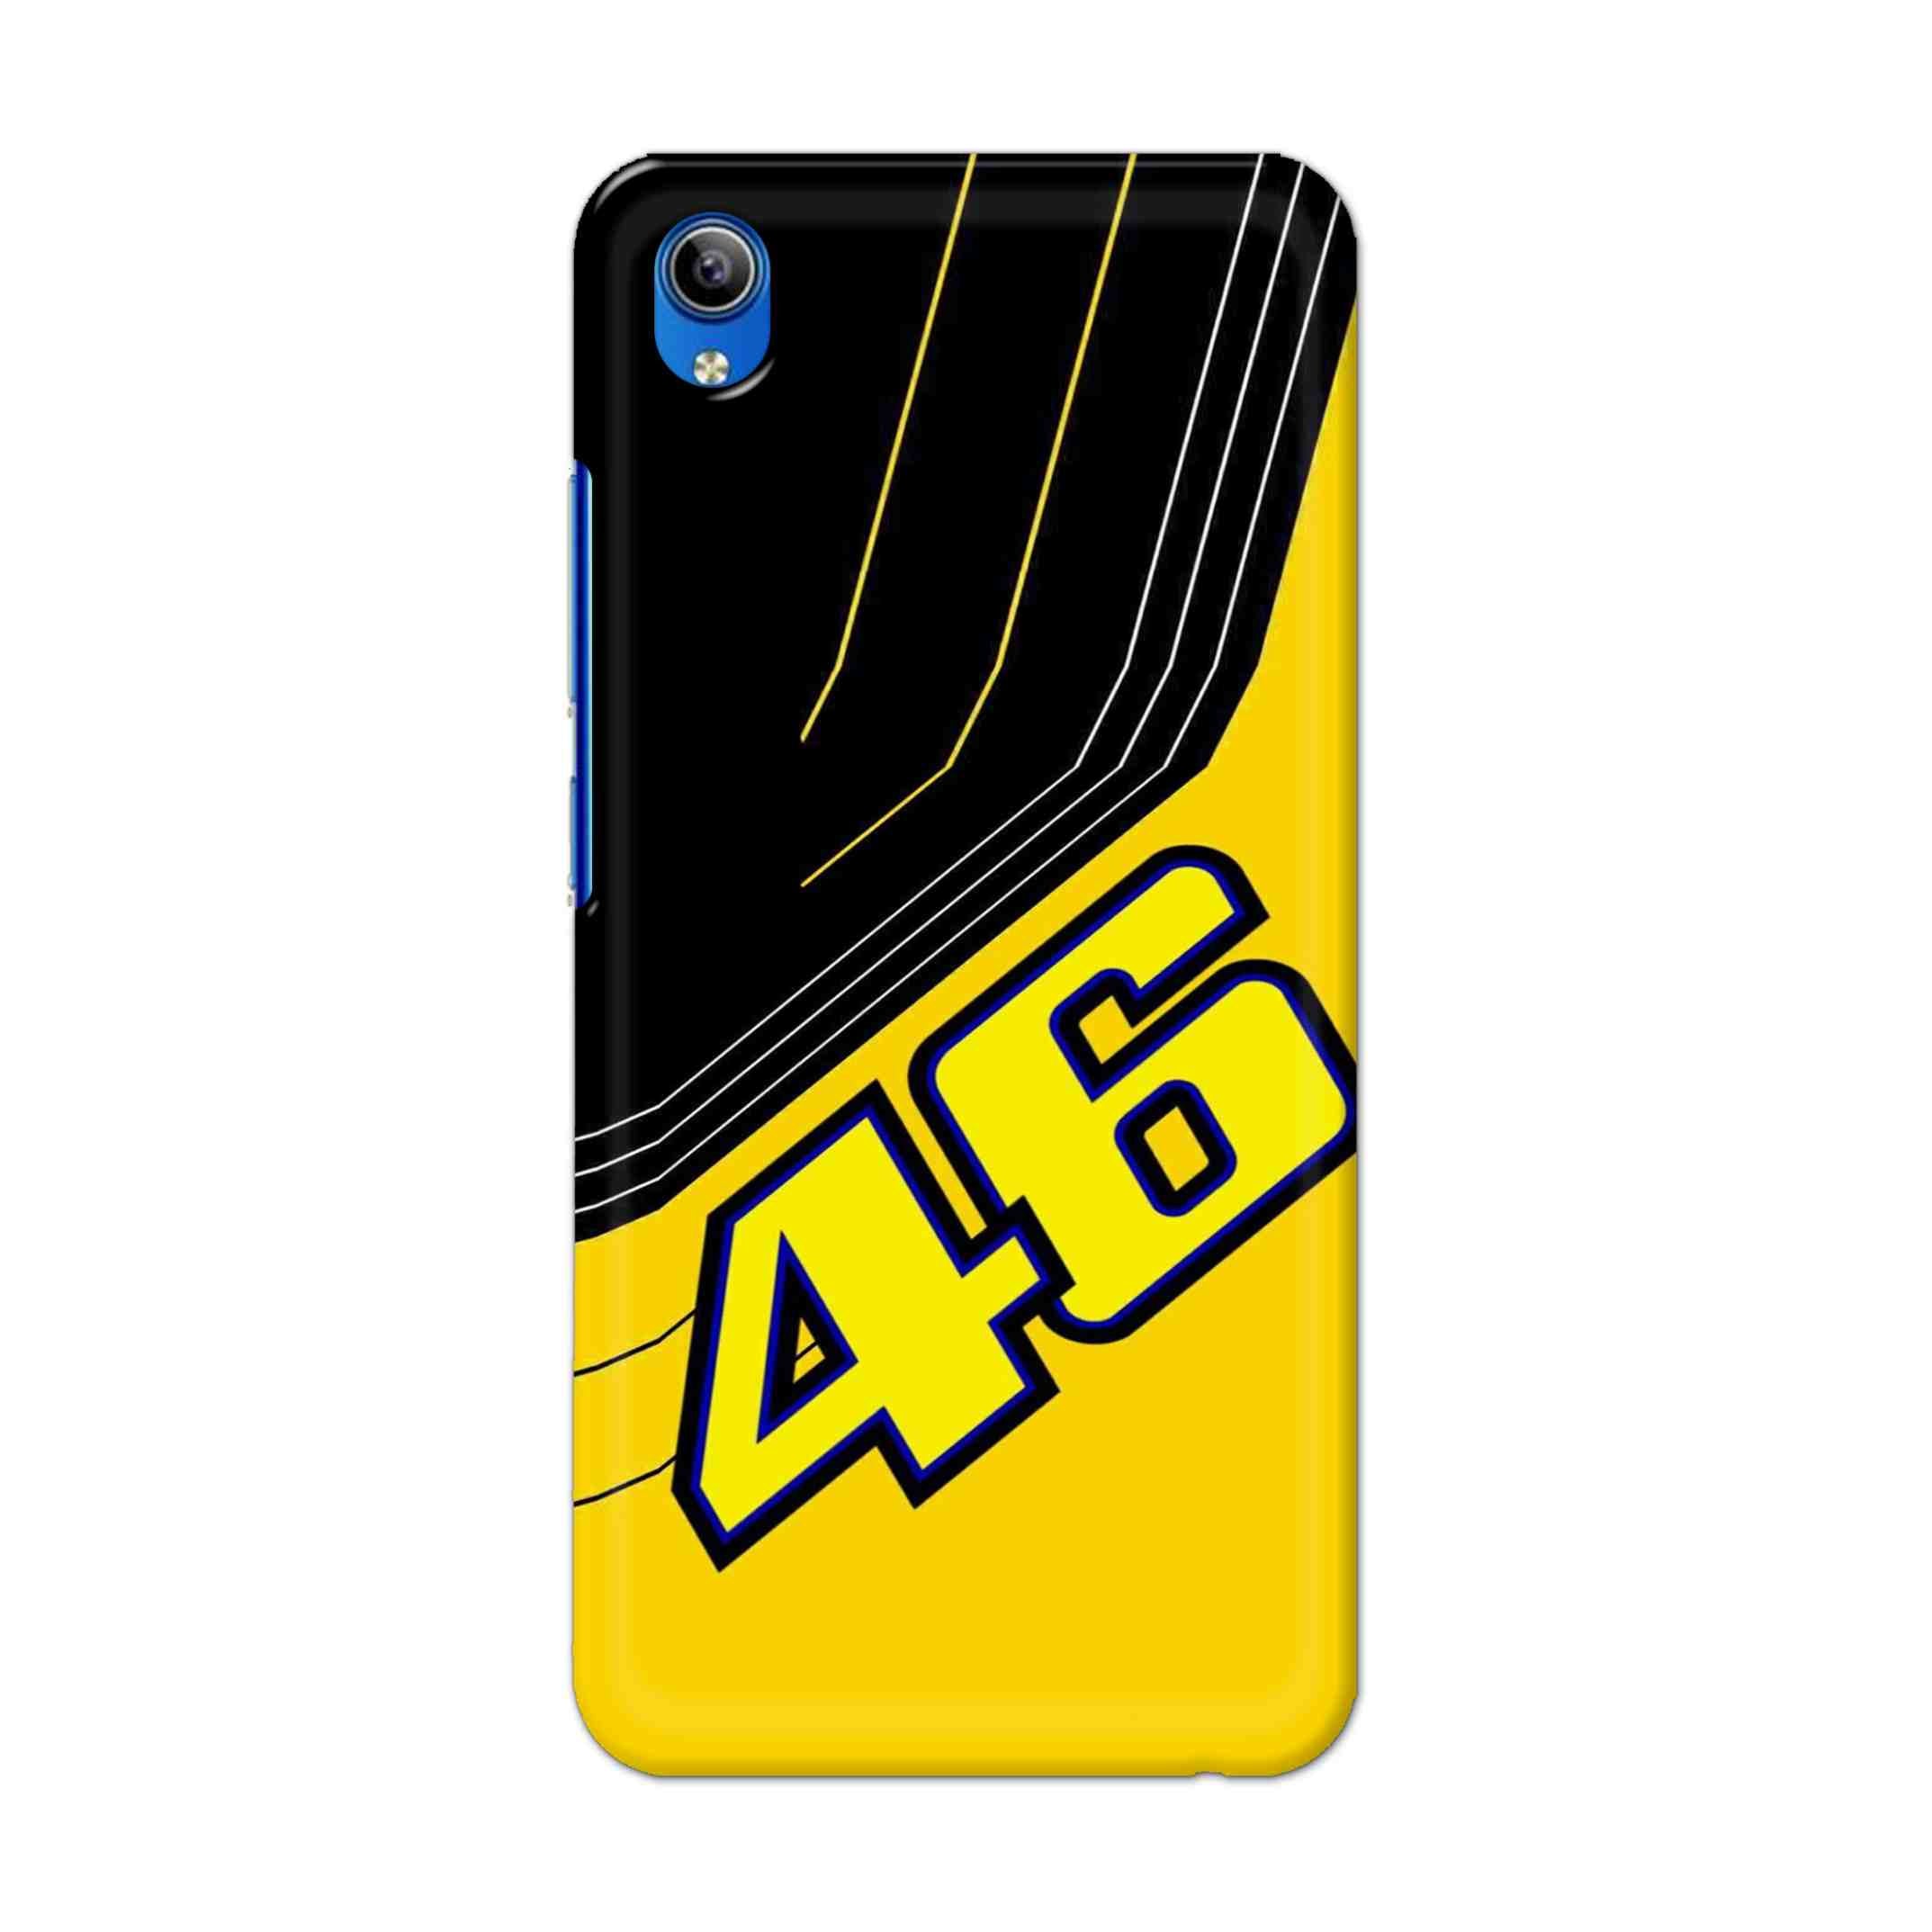 Buy 46 Hard Back Mobile Phone Case Cover For Vivo Y91i Online